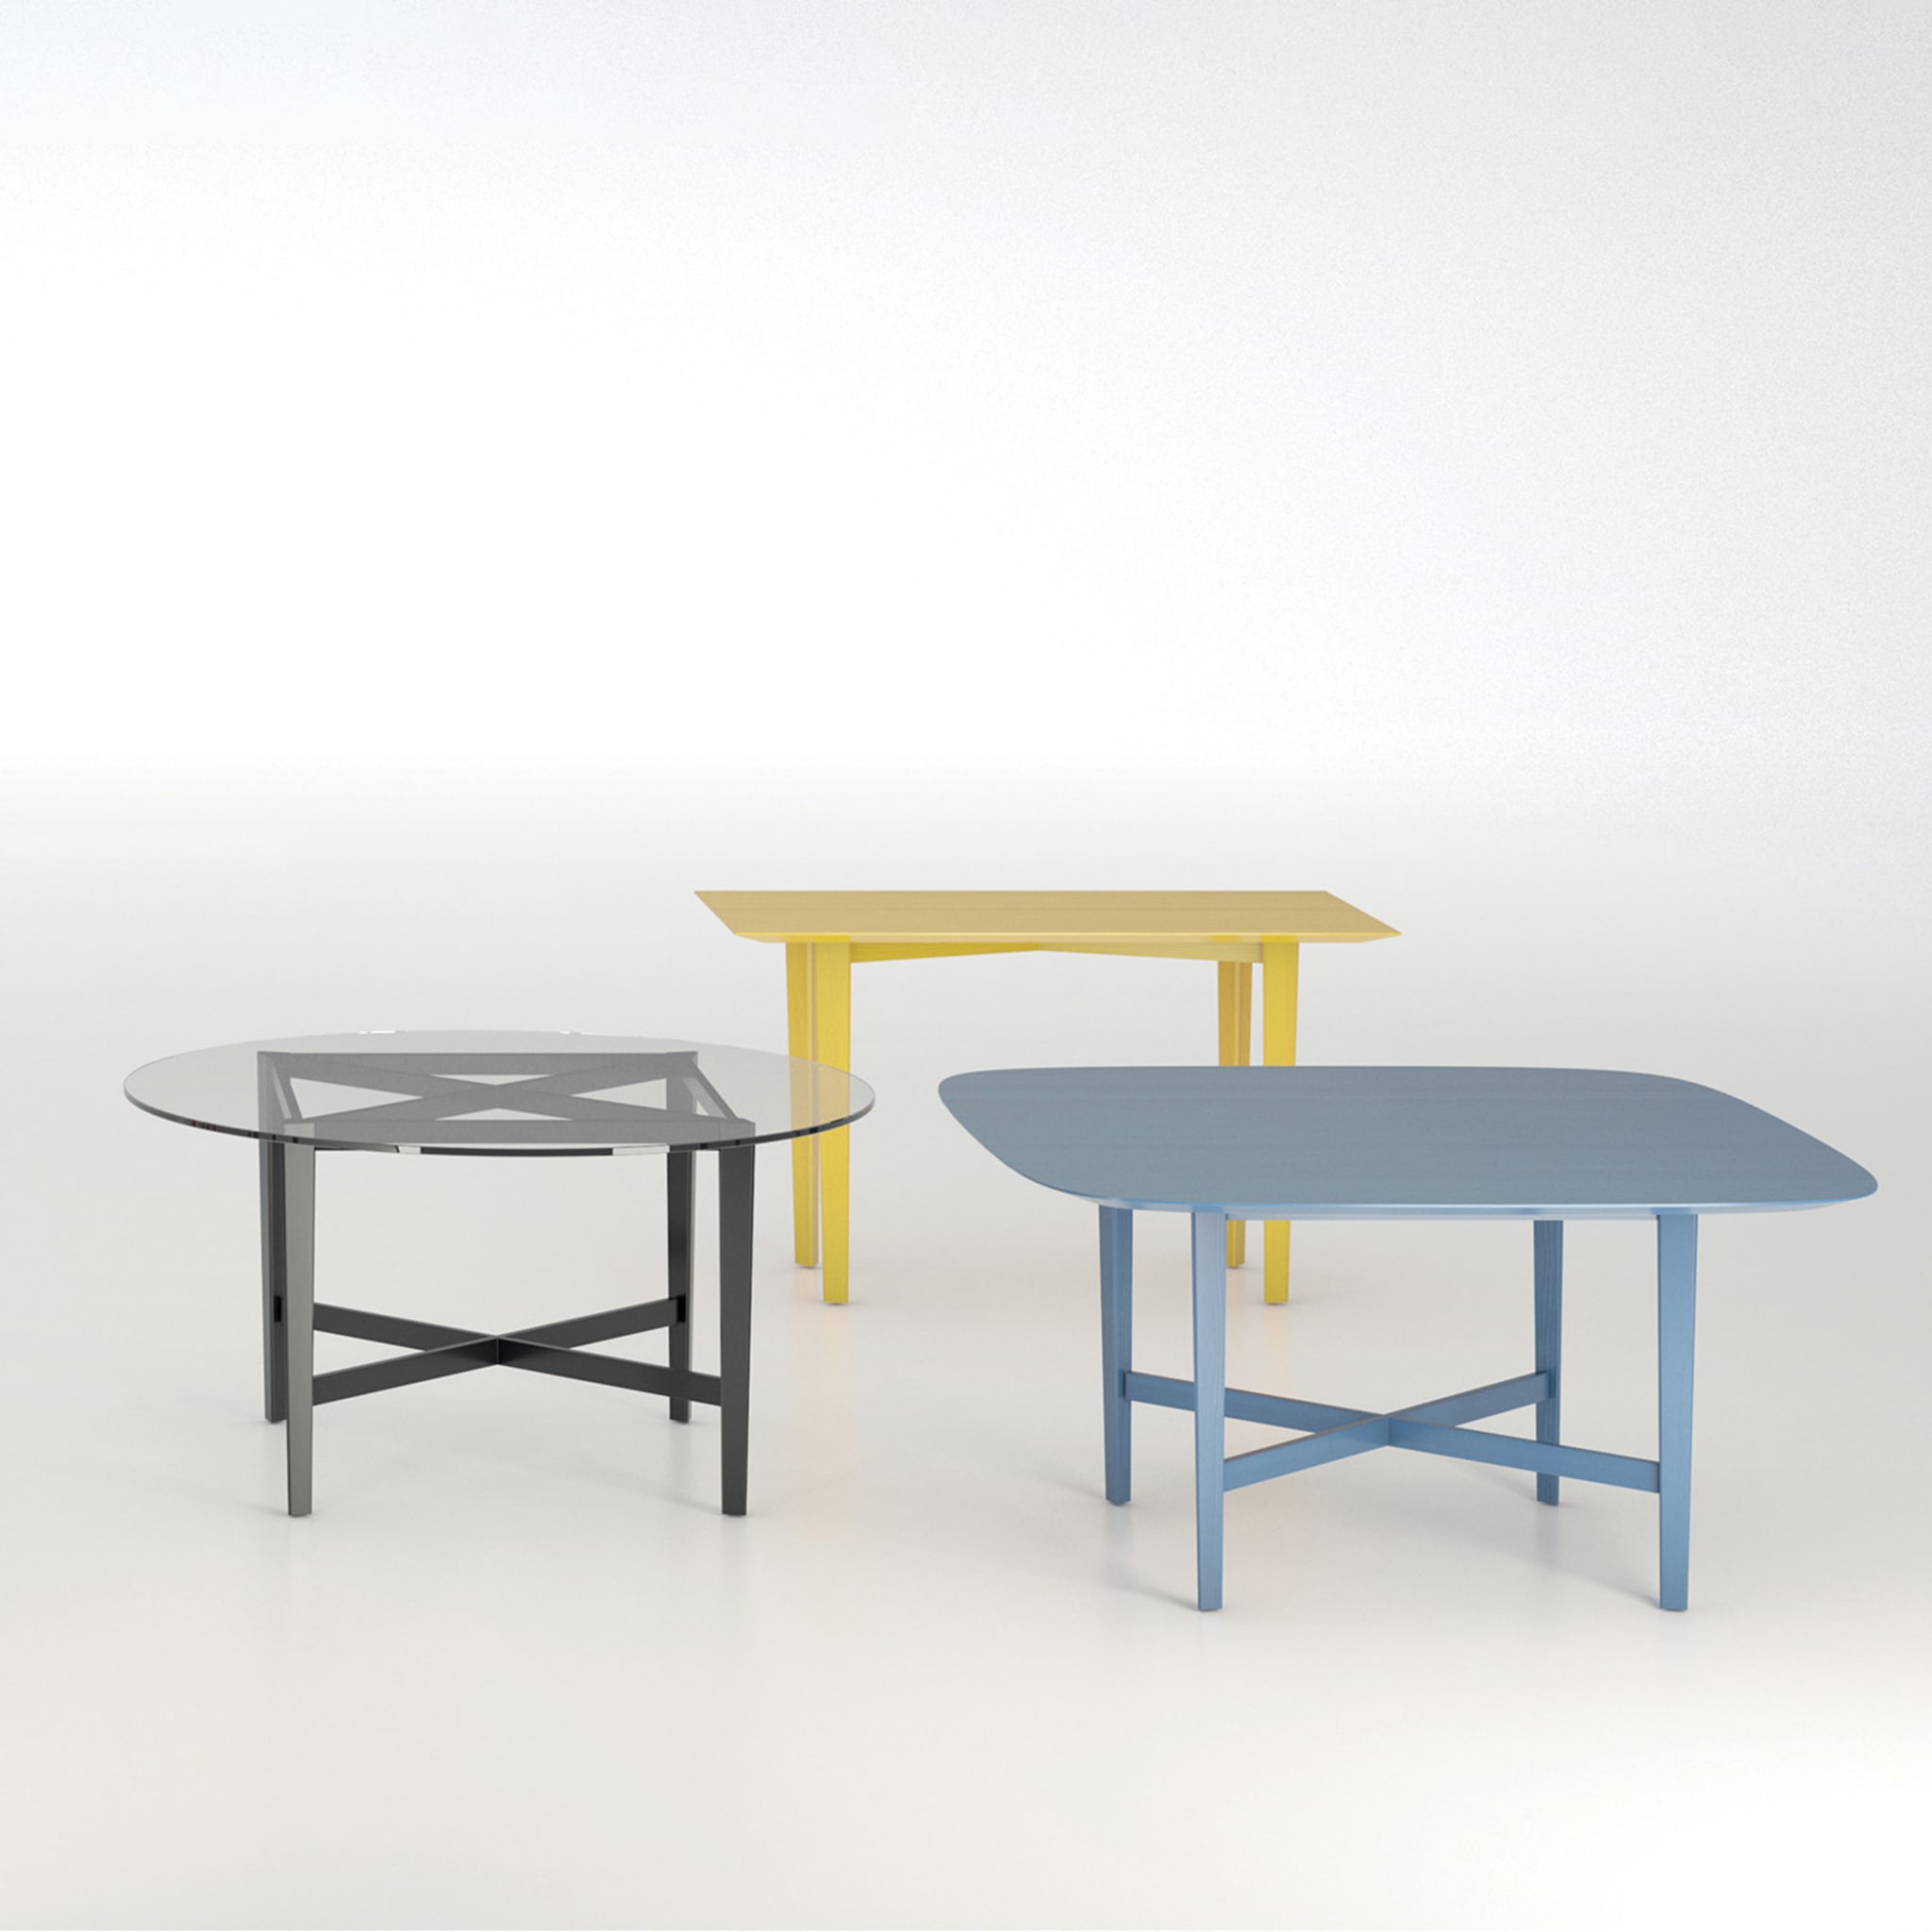 Luigi Filippo Squared Azure Table by M. Laudani & M. Romanelli - Alternative view 1